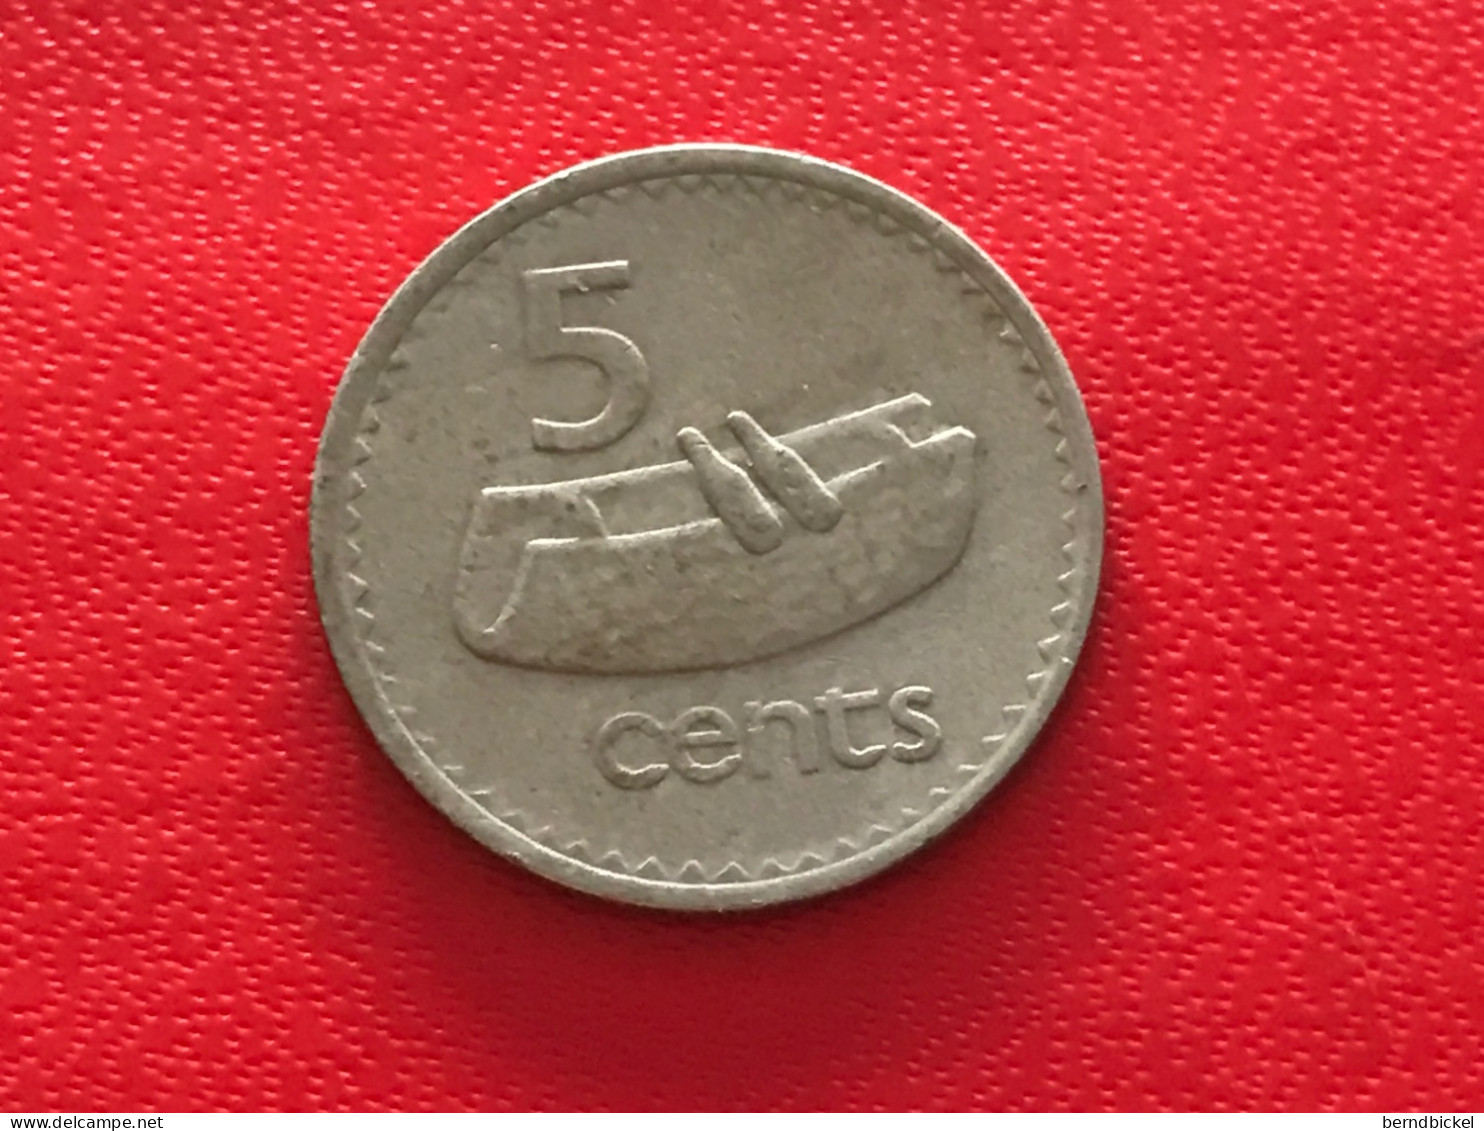 Münze Münzen Umlaufmünze Fiji 5 Cents 1975 - Fidschi